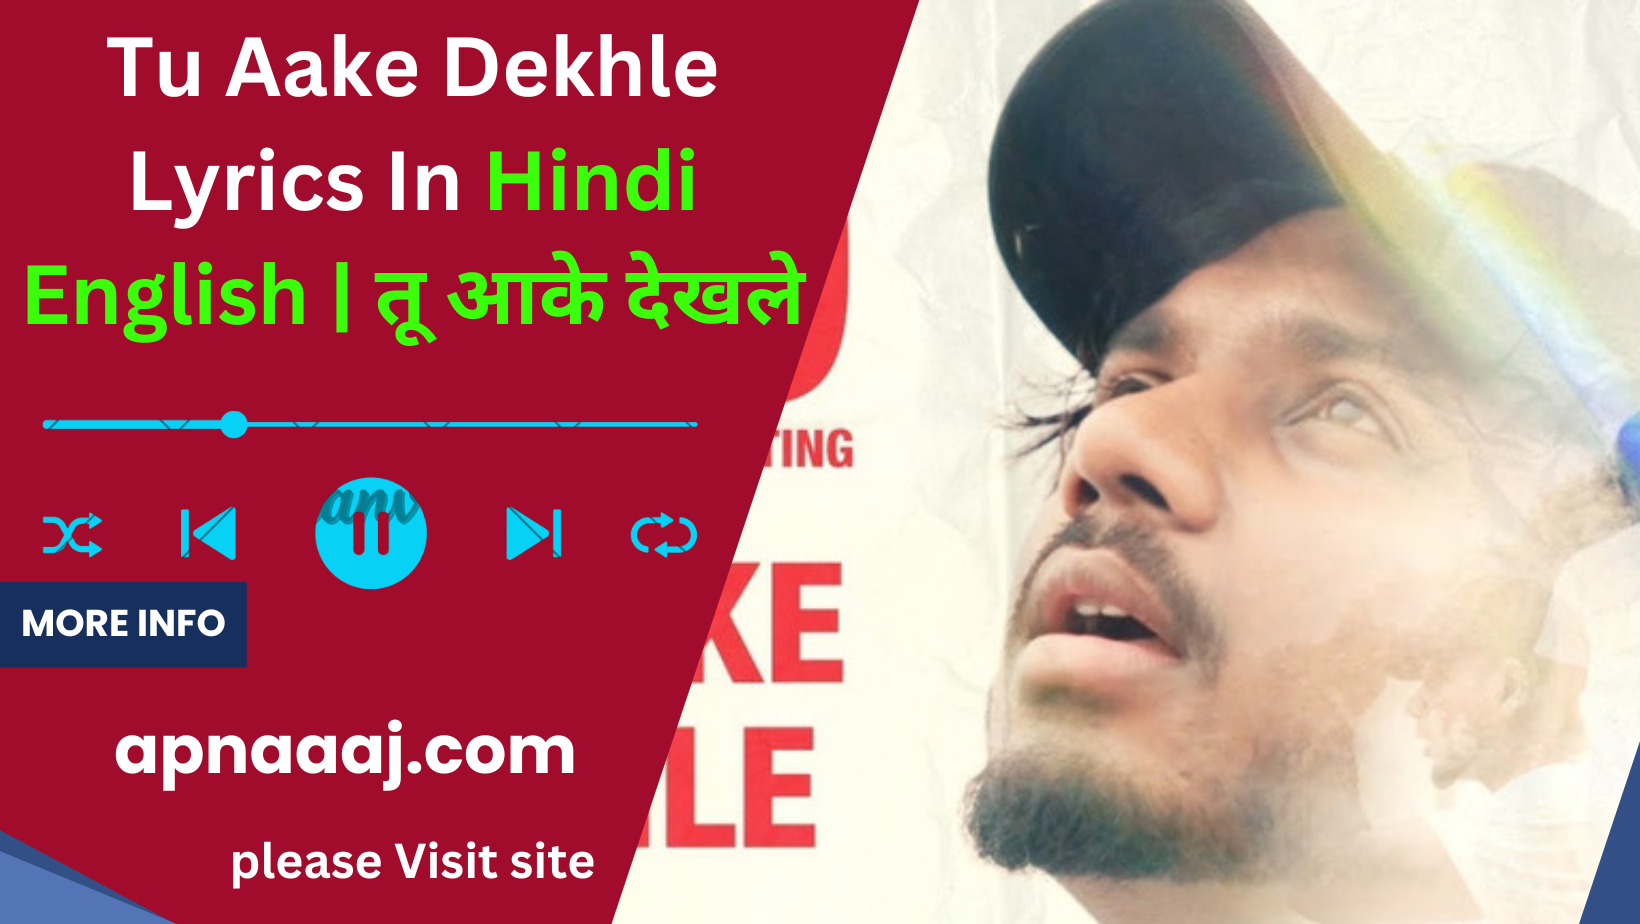 Tu Aake Dekhle Song lyrics